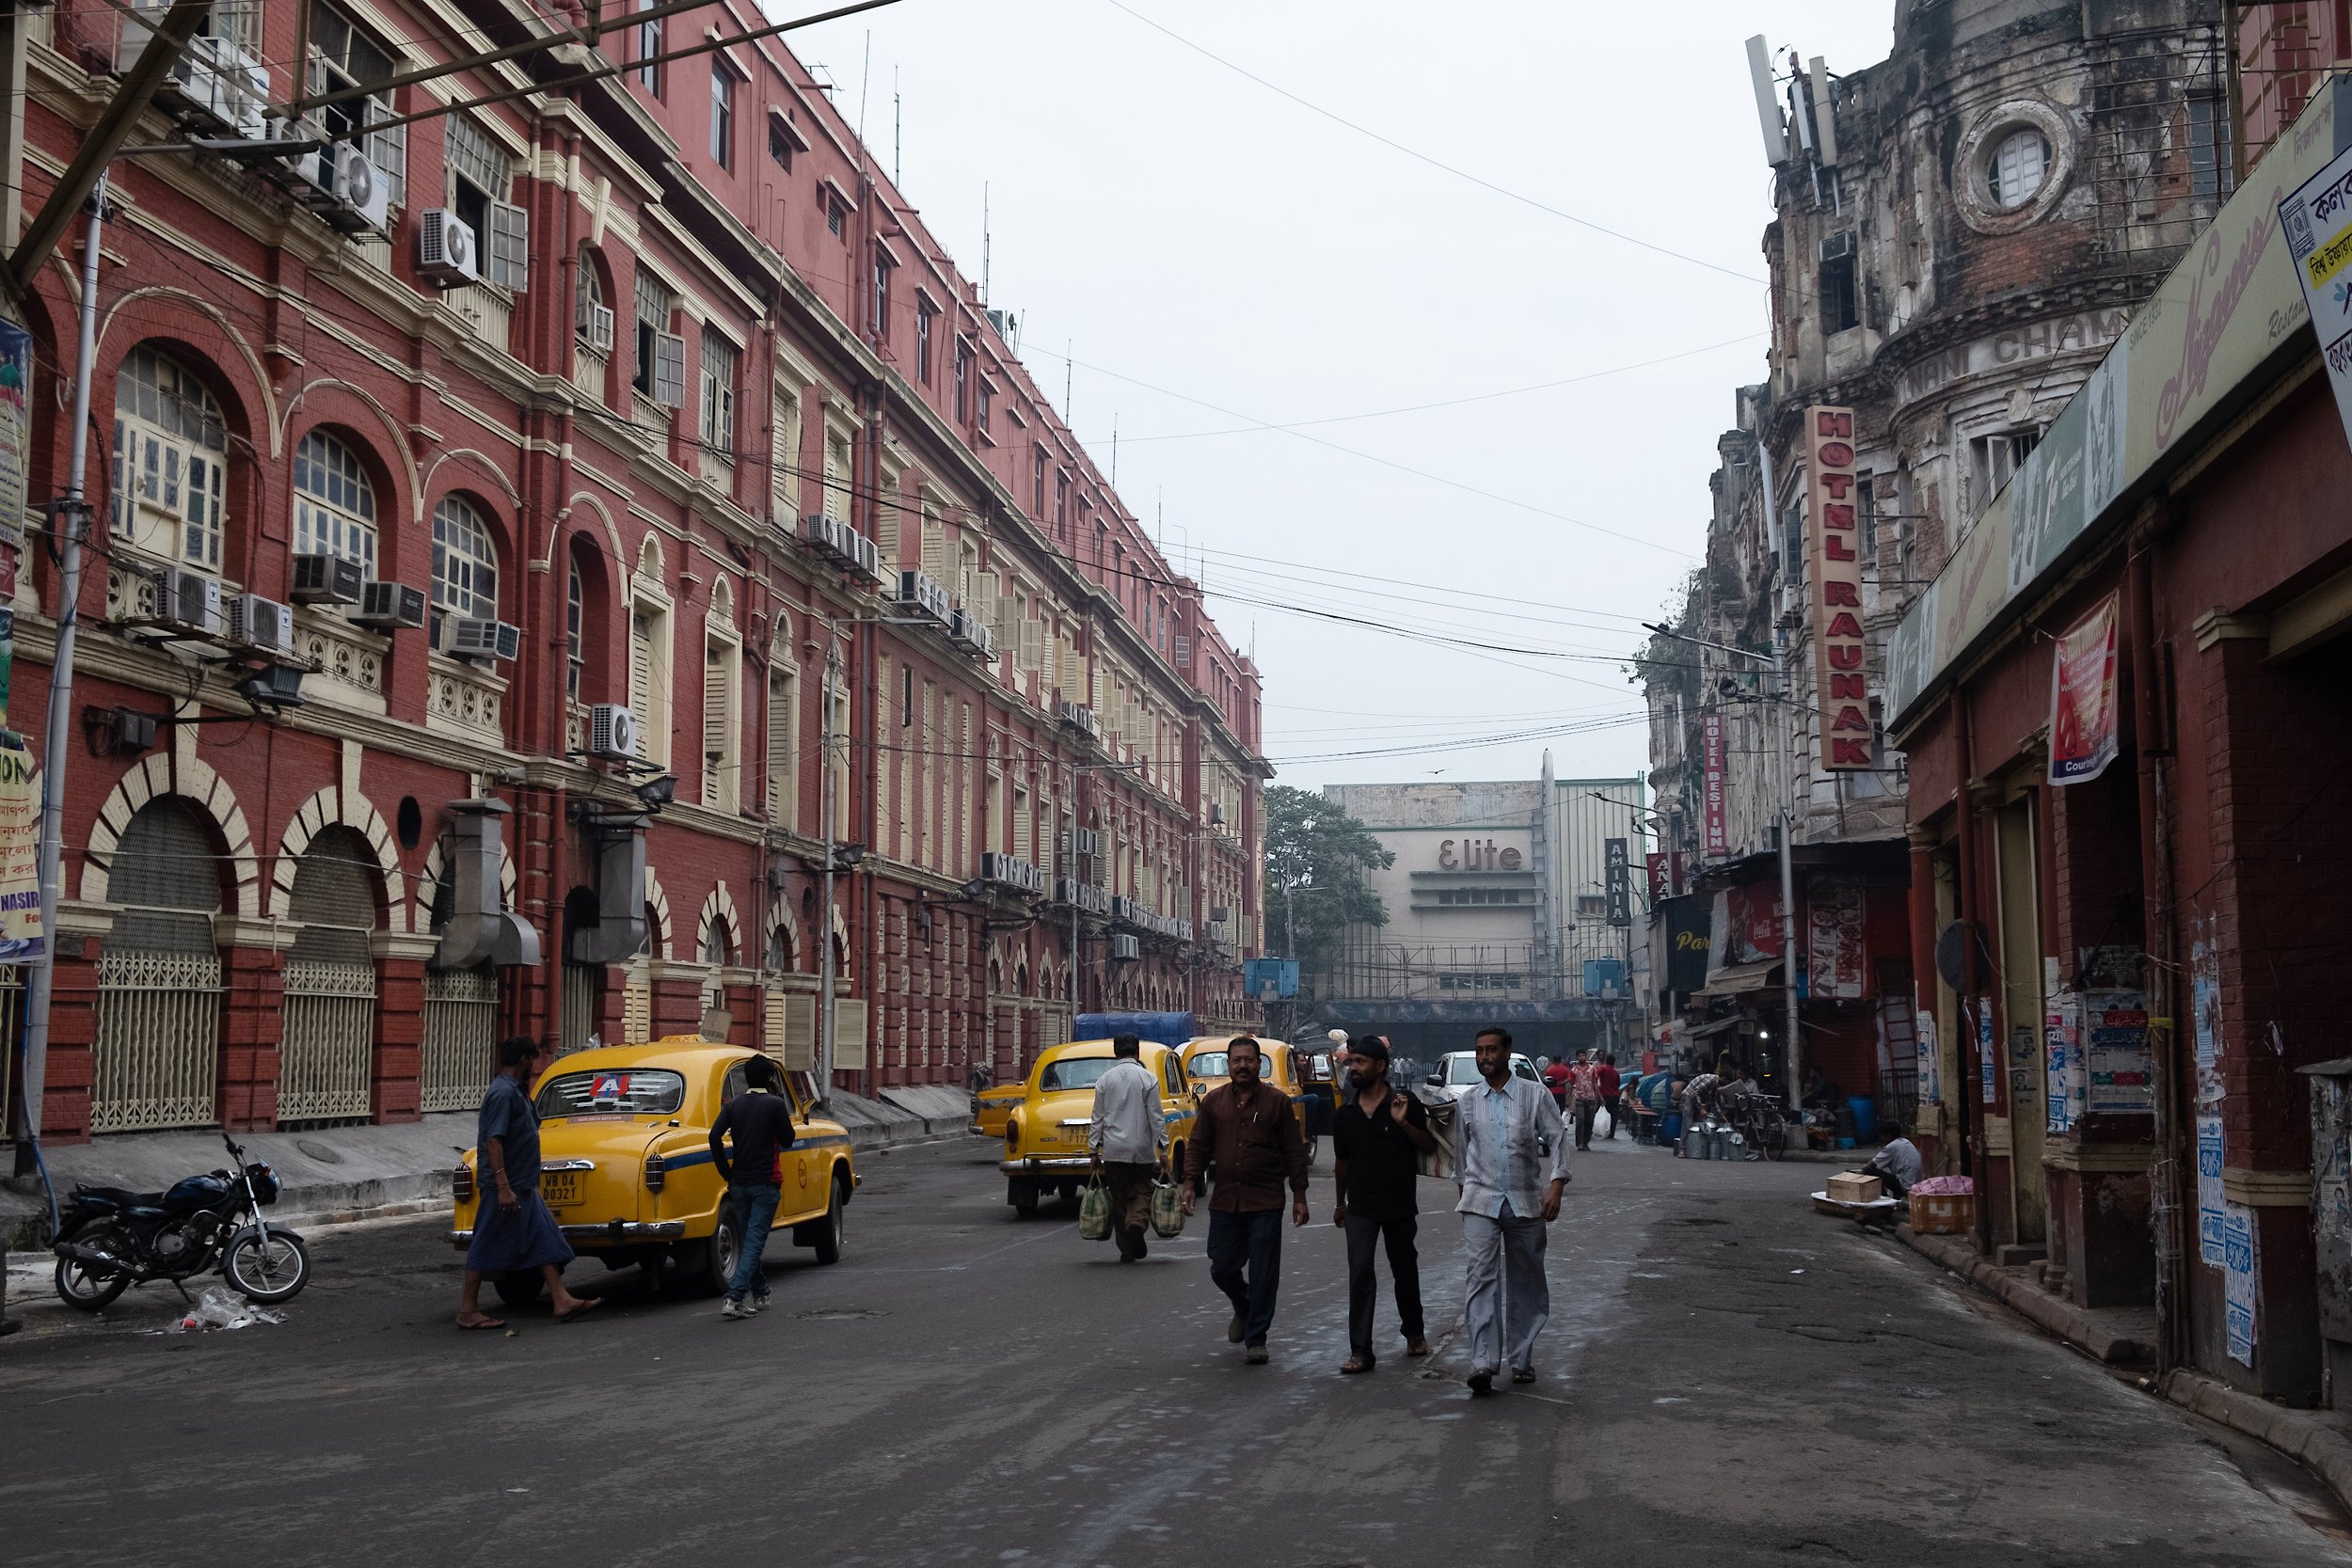  Kolkata streets 